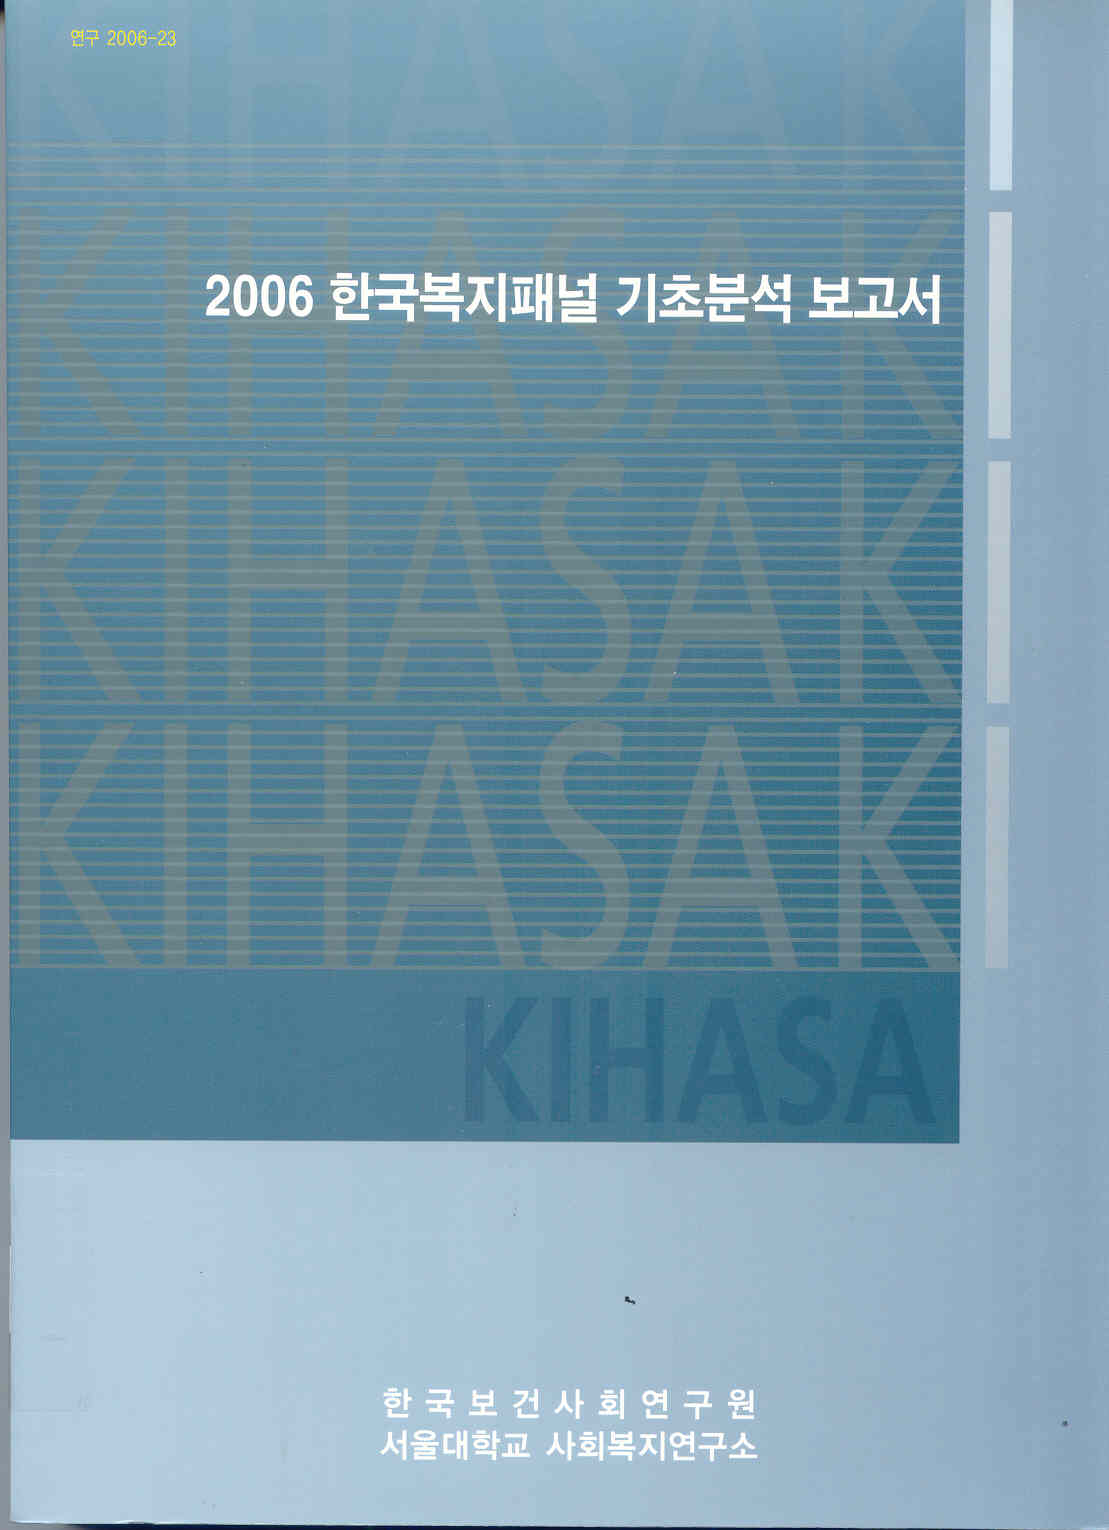 2006 한국복지패널 기초분석 보고서